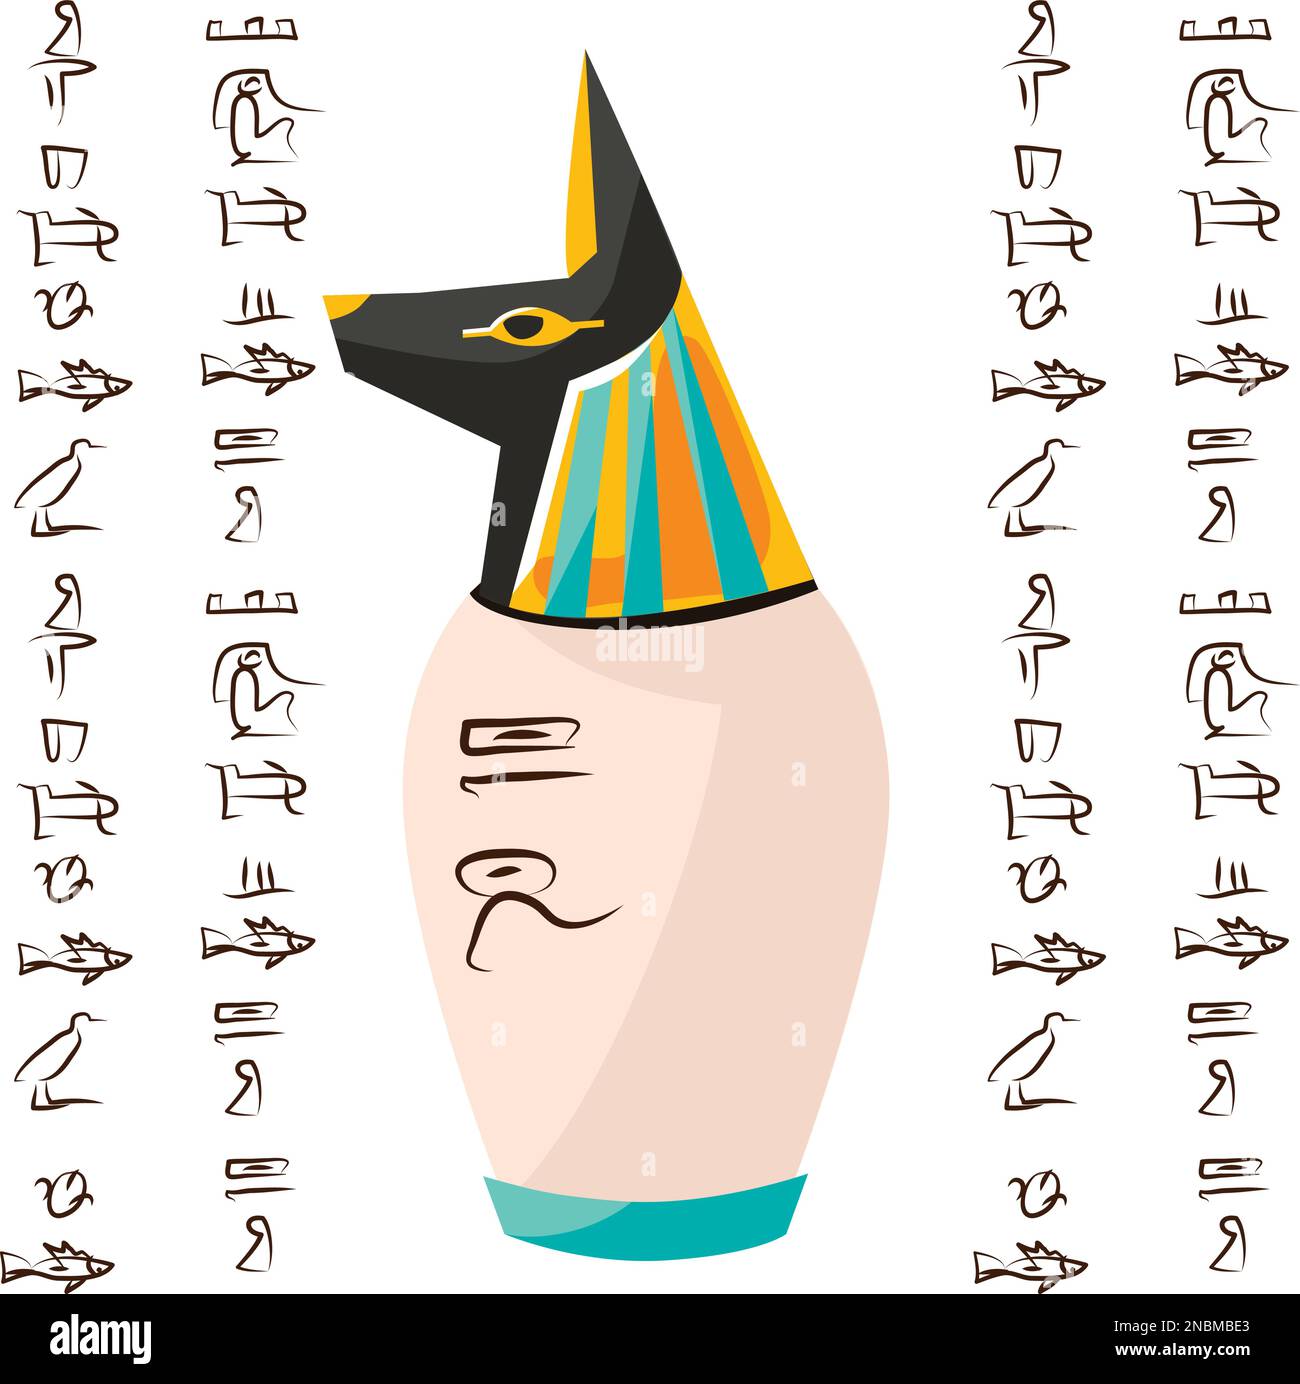 Alte ägyptische Ritualvase mit Hund, Schakalkopf und Hieroglyphen Cartoons Vektordarstellung. Dekorative Urne für ein Opfer für gott Anubis oder Aufbewahrung von Tempelschätzen, isoliert auf weißem Hintergrund Stock Vektor